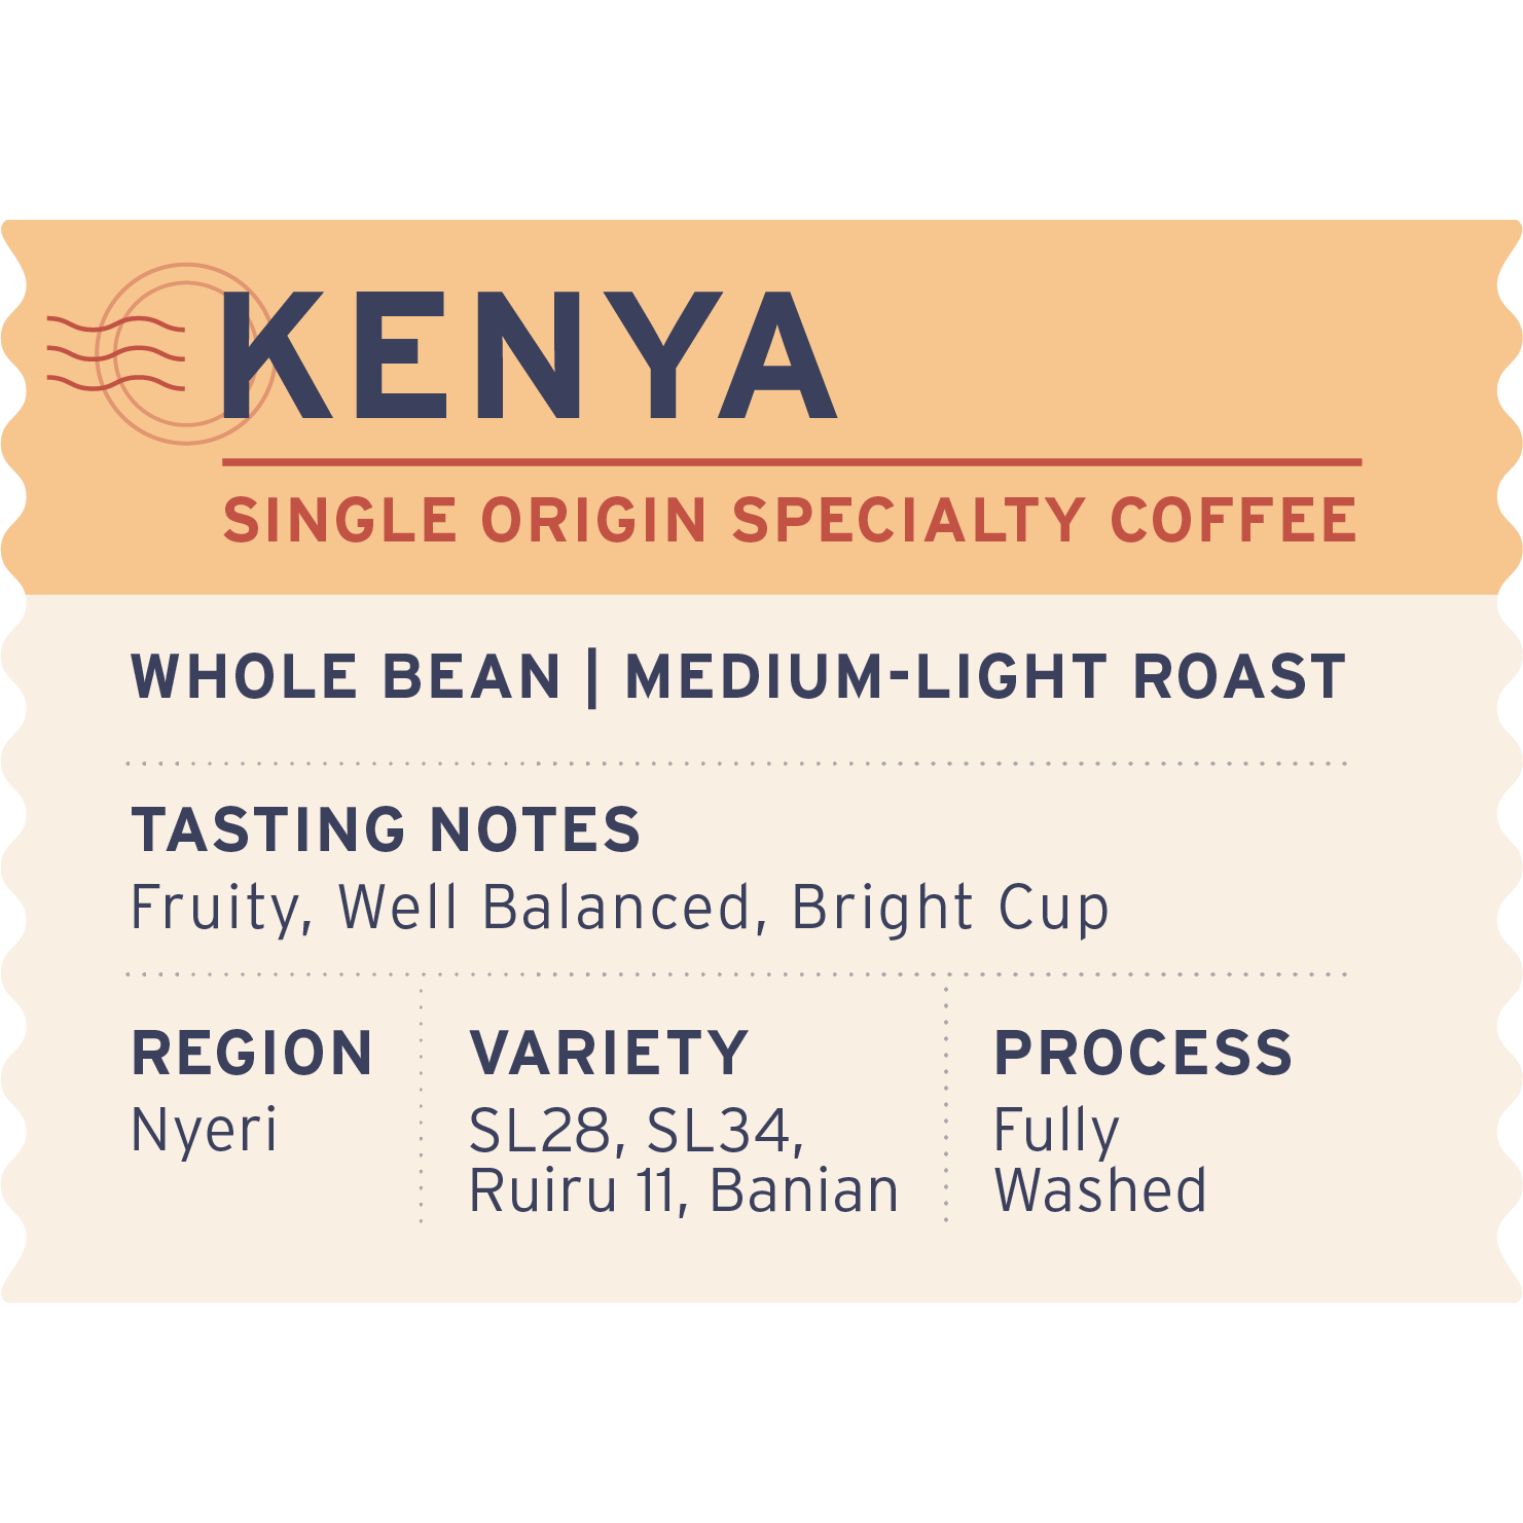 Kenya - Label Detail - Heyday Coffee Co.